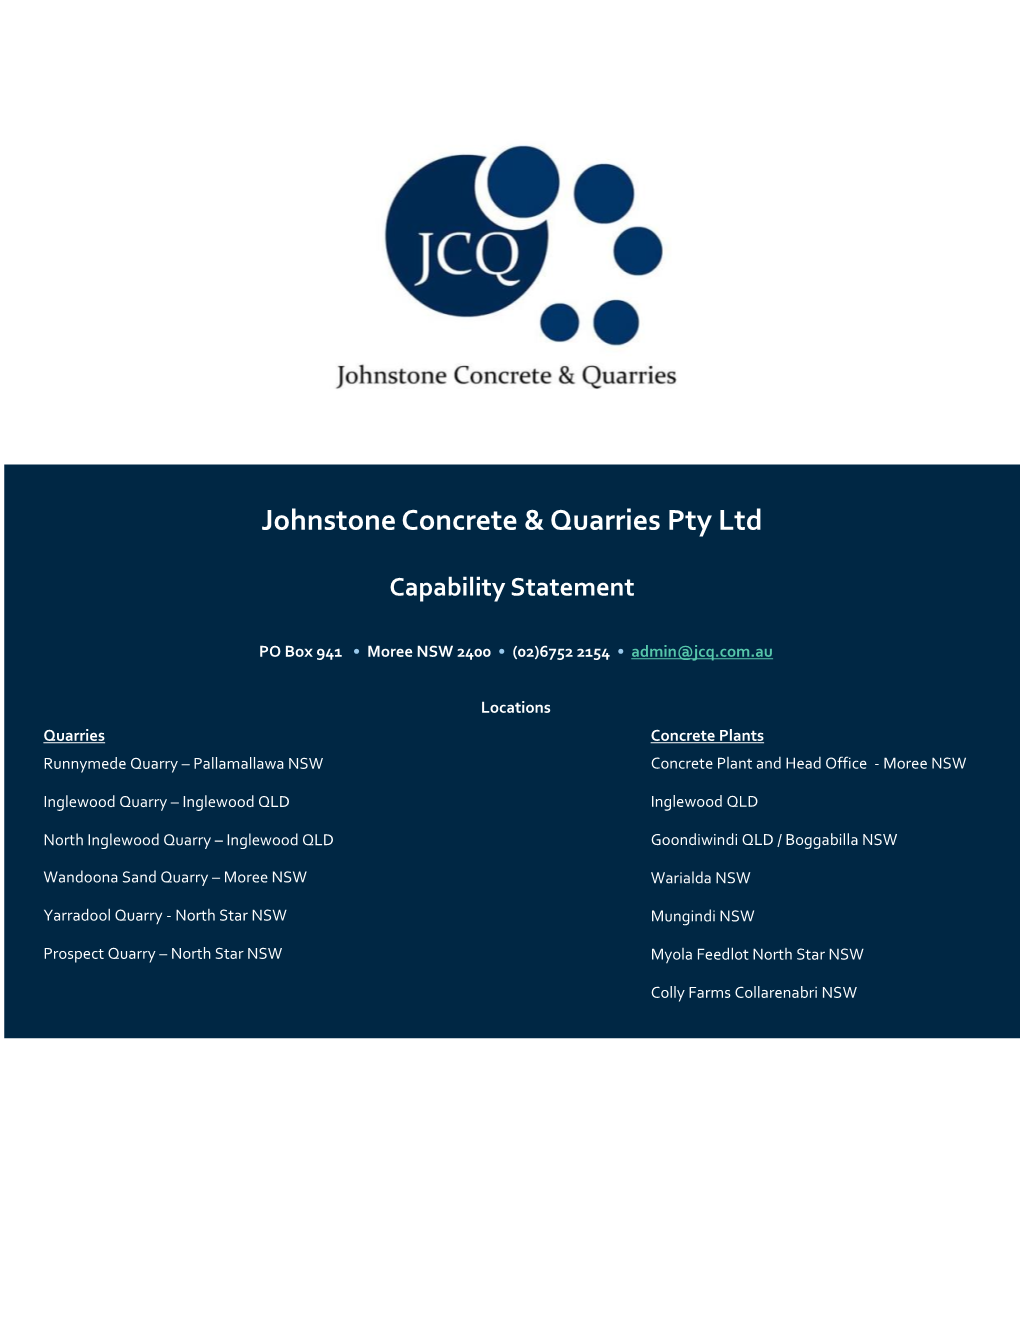 Johnstone Concrete & Quarries Pty